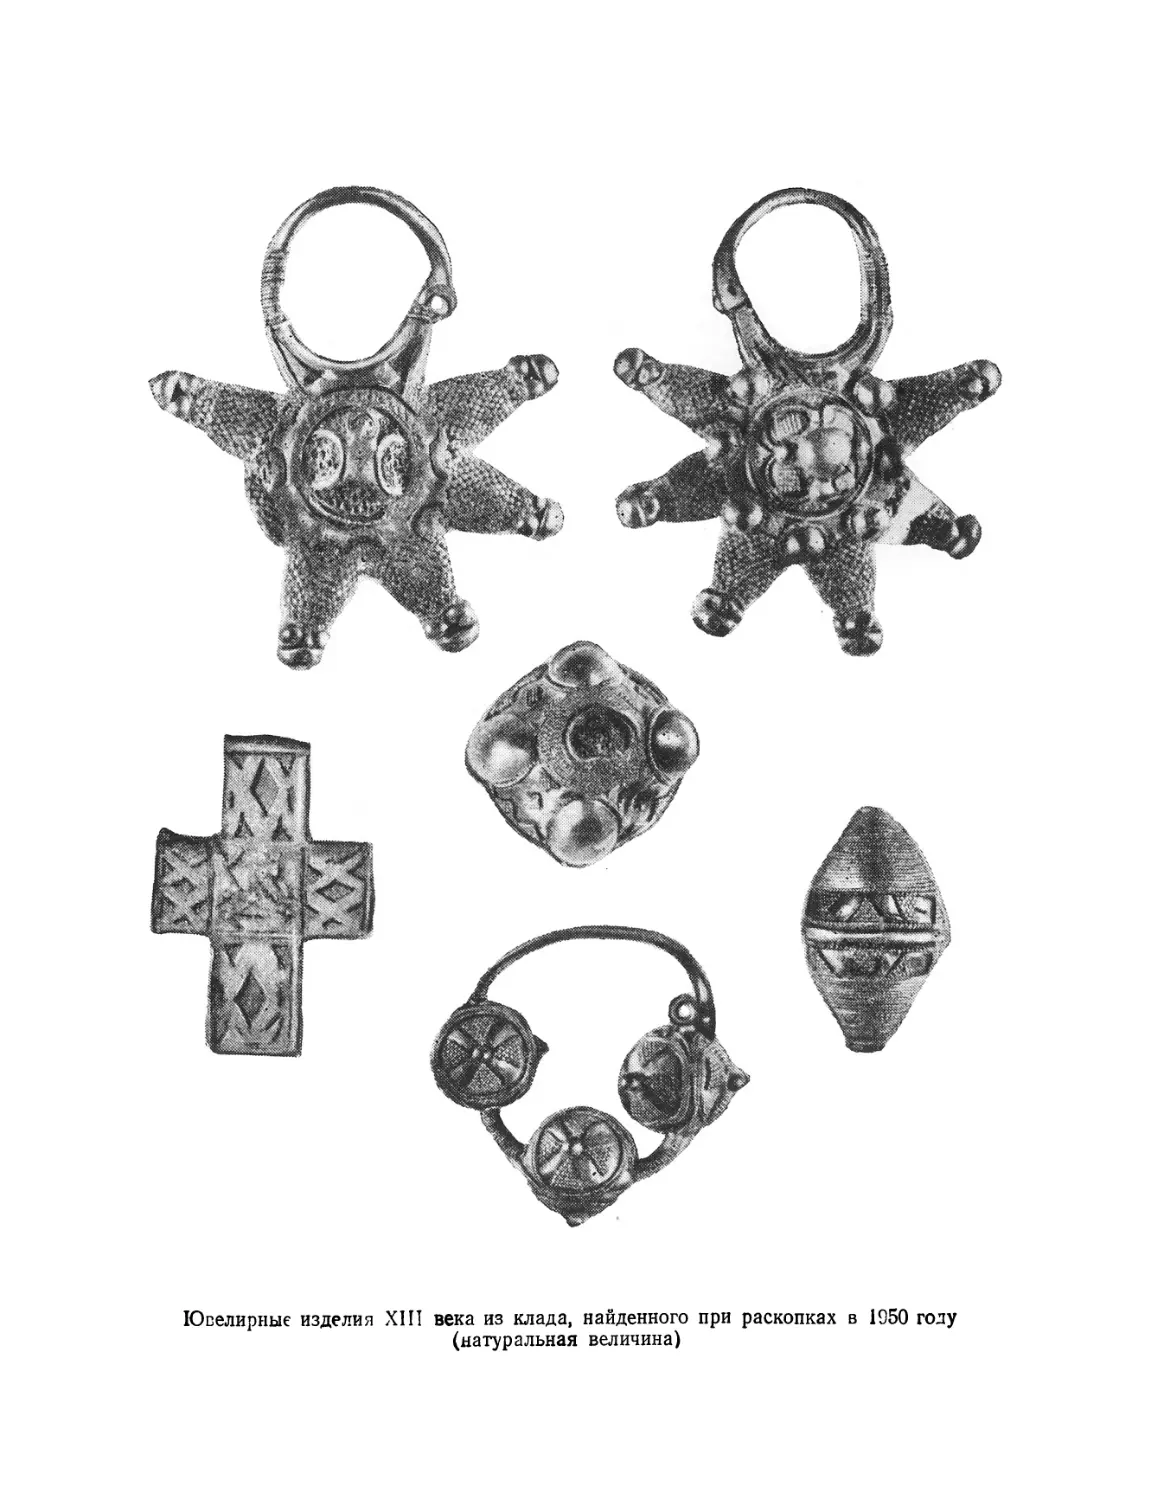 Вклейка. Ювелирные изделия XIII века